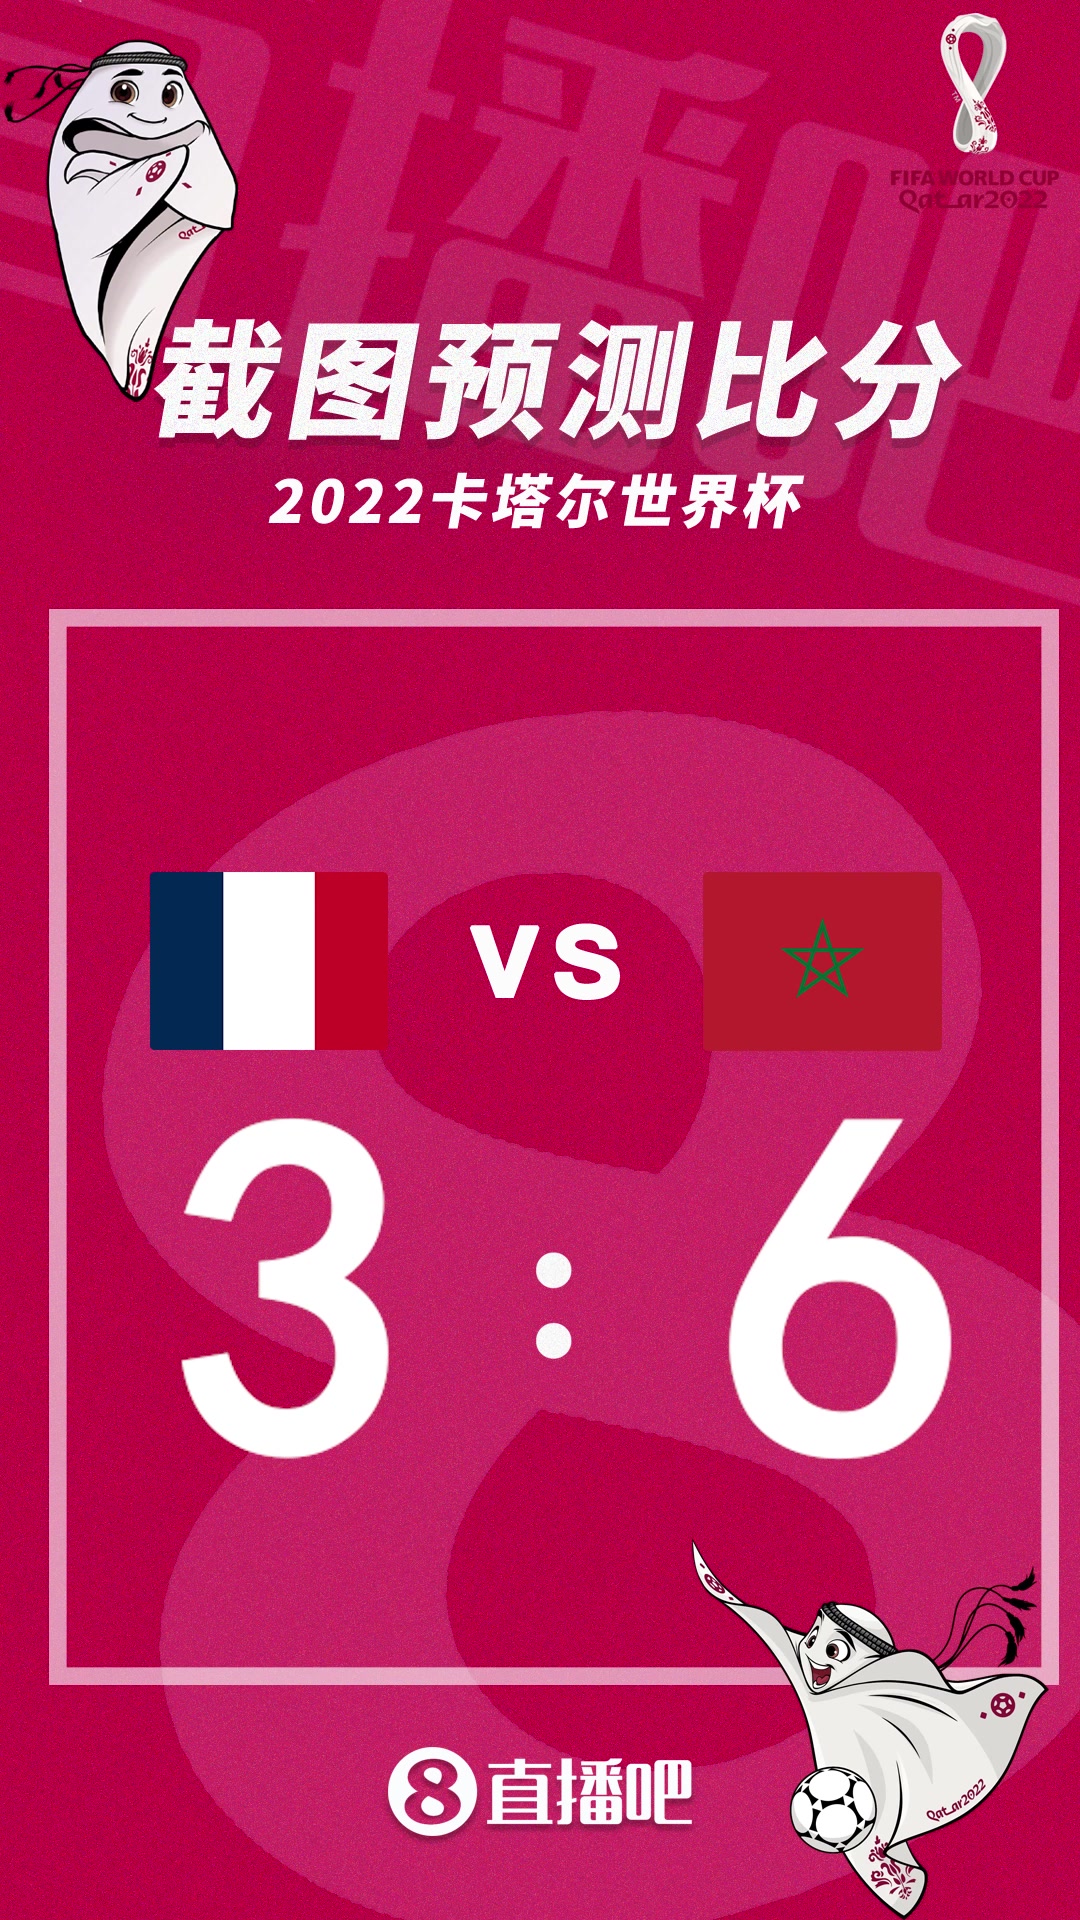 姆巴佩大战纯粹足球！截图预测法国vs摩洛哥比分